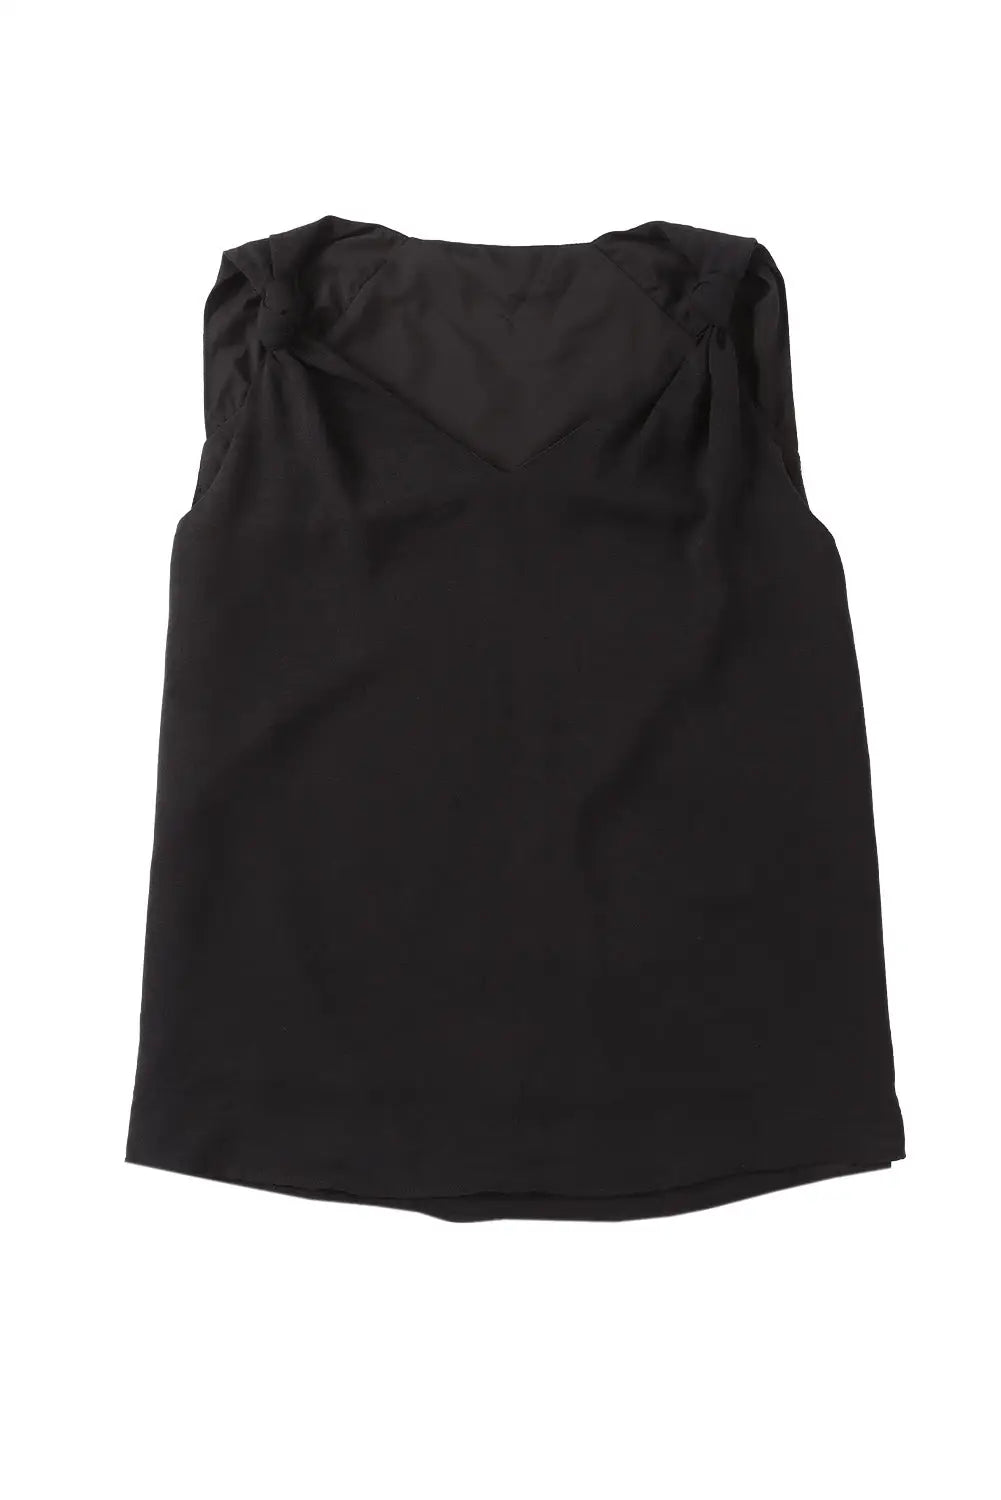 Black v neck knotted shoulder vest - tank tops